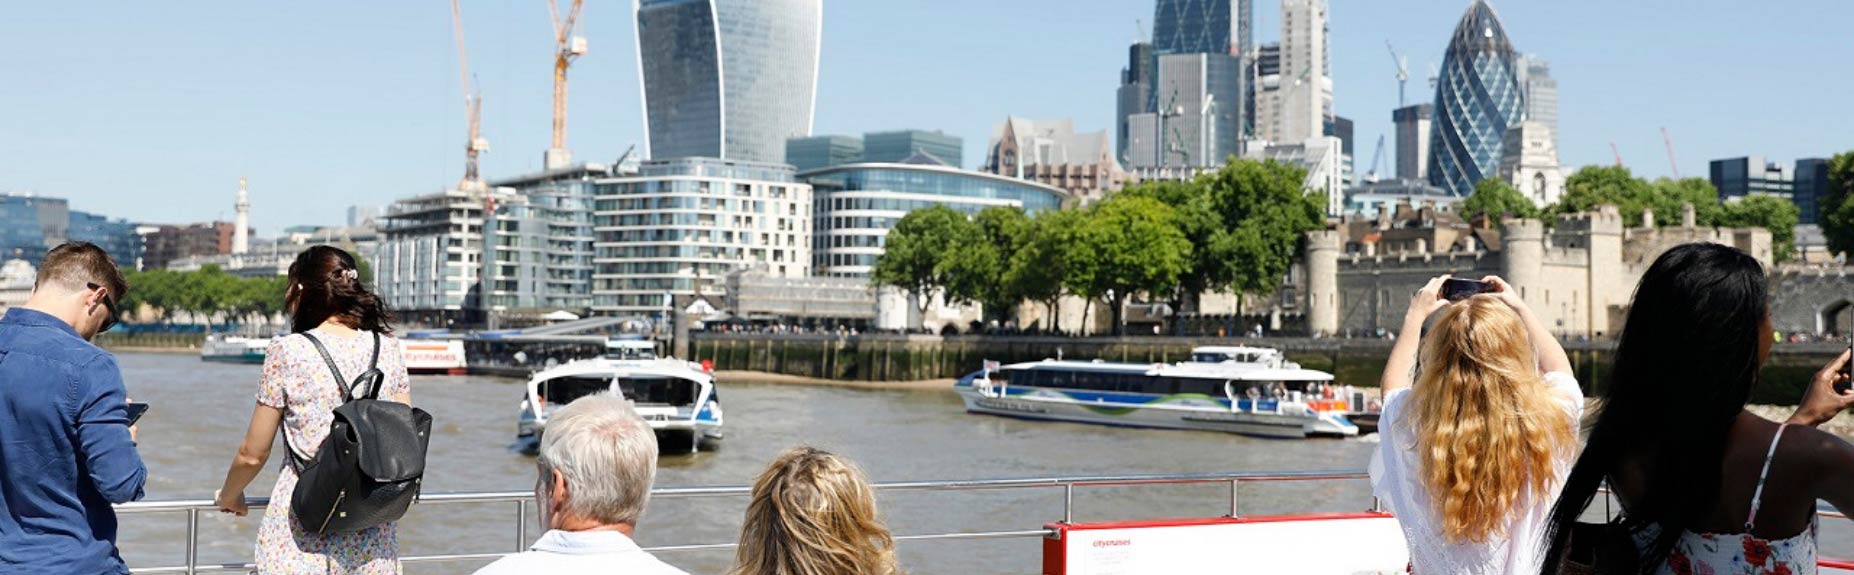 Những người trên boong thuyền Thames và London trong nền